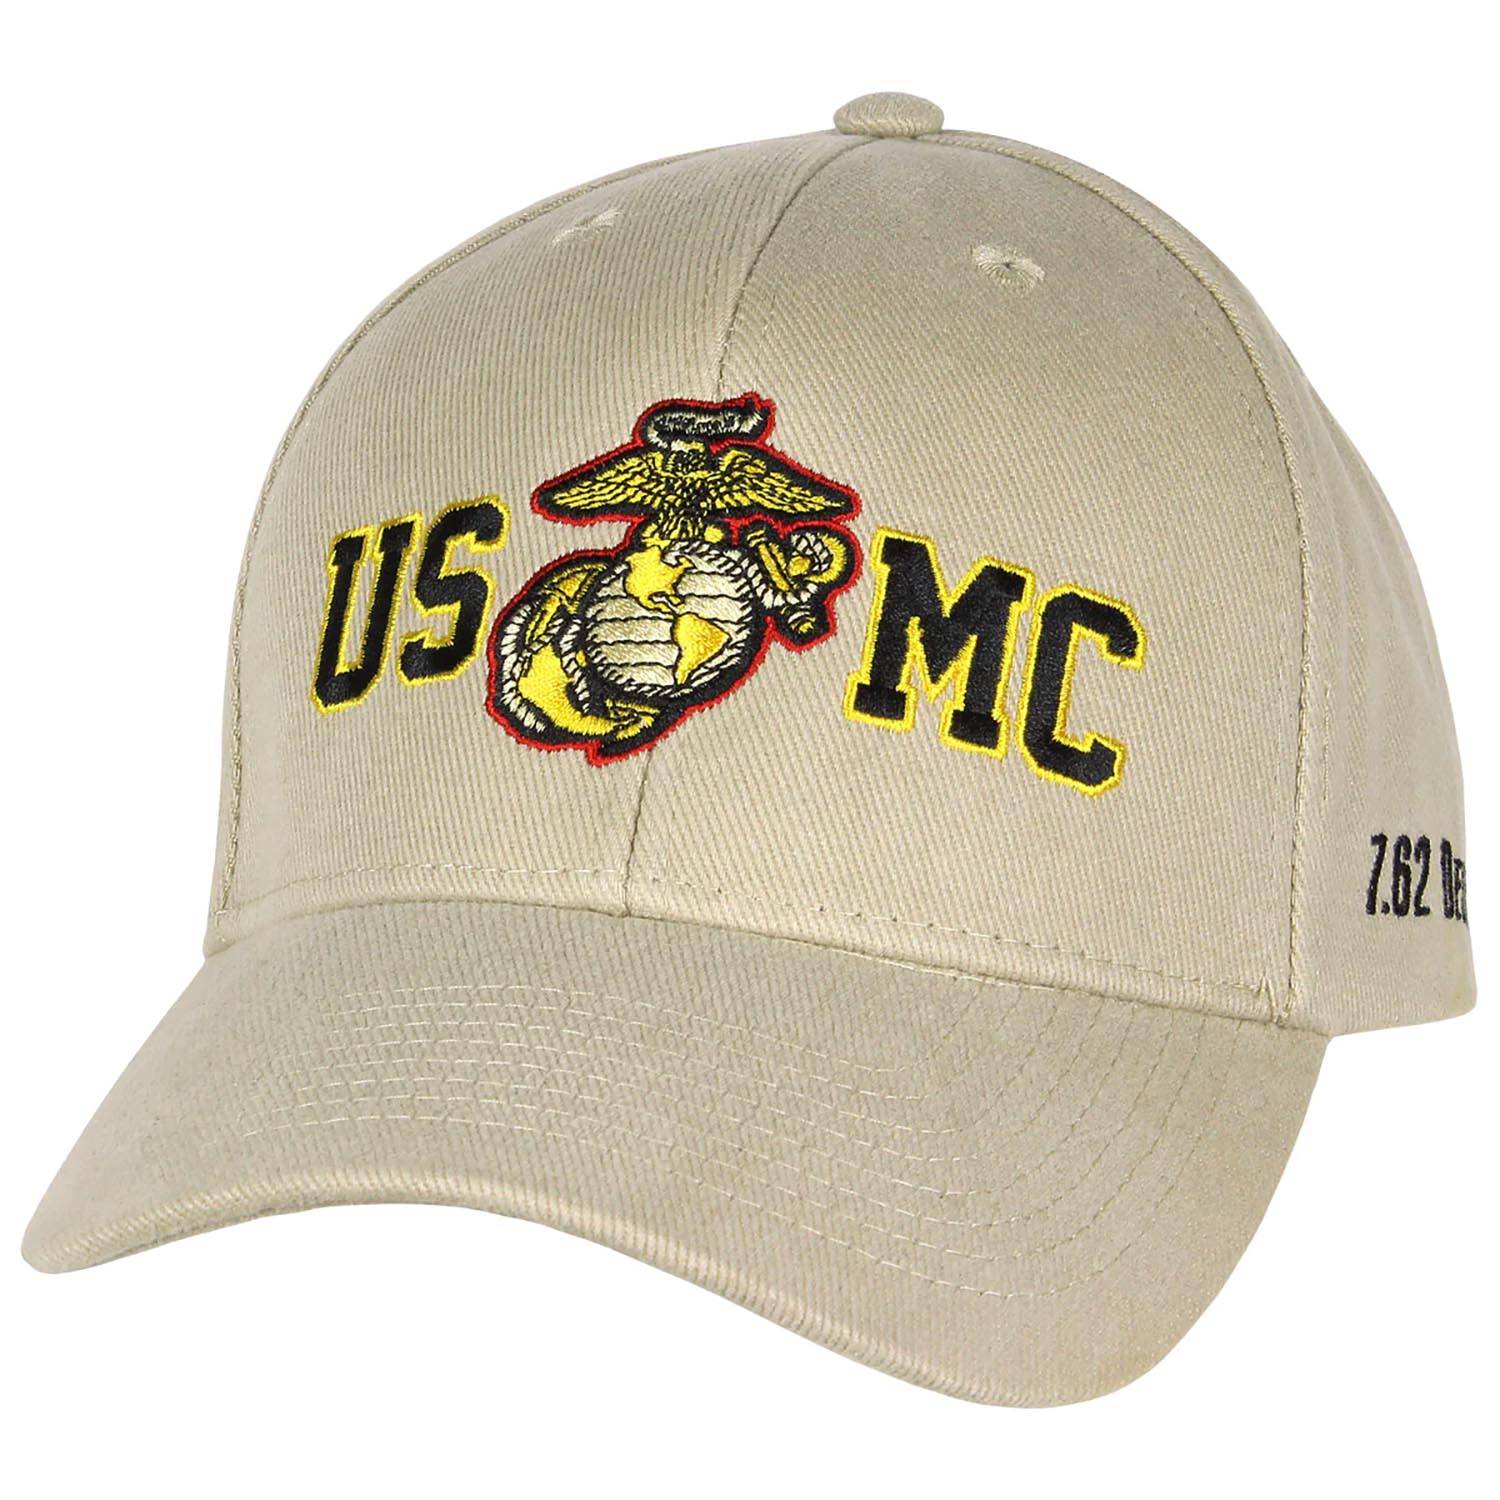 7.62 Design Tan USMC Twill Hat